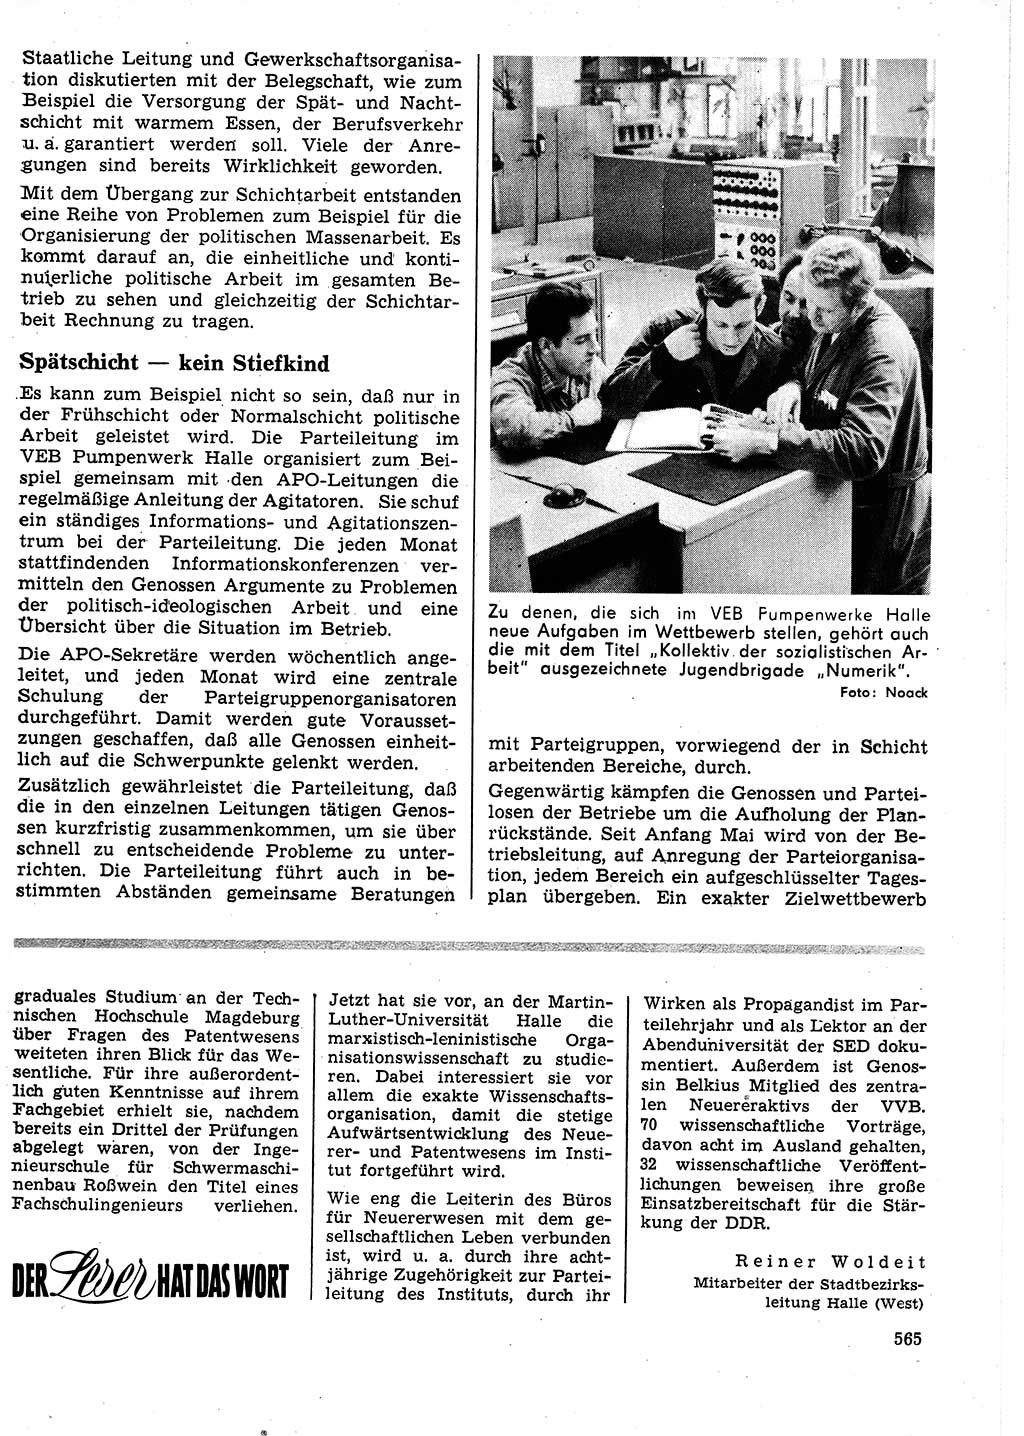 Neuer Weg (NW), Organ des Zentralkomitees (ZK) der SED (Sozialistische Einheitspartei Deutschlands) fÃ¼r Fragen des Parteilebens, 25. Jahrgang [Deutsche Demokratische Republik (DDR)] 1970, Seite 565 (NW ZK SED DDR 1970, S. 565)